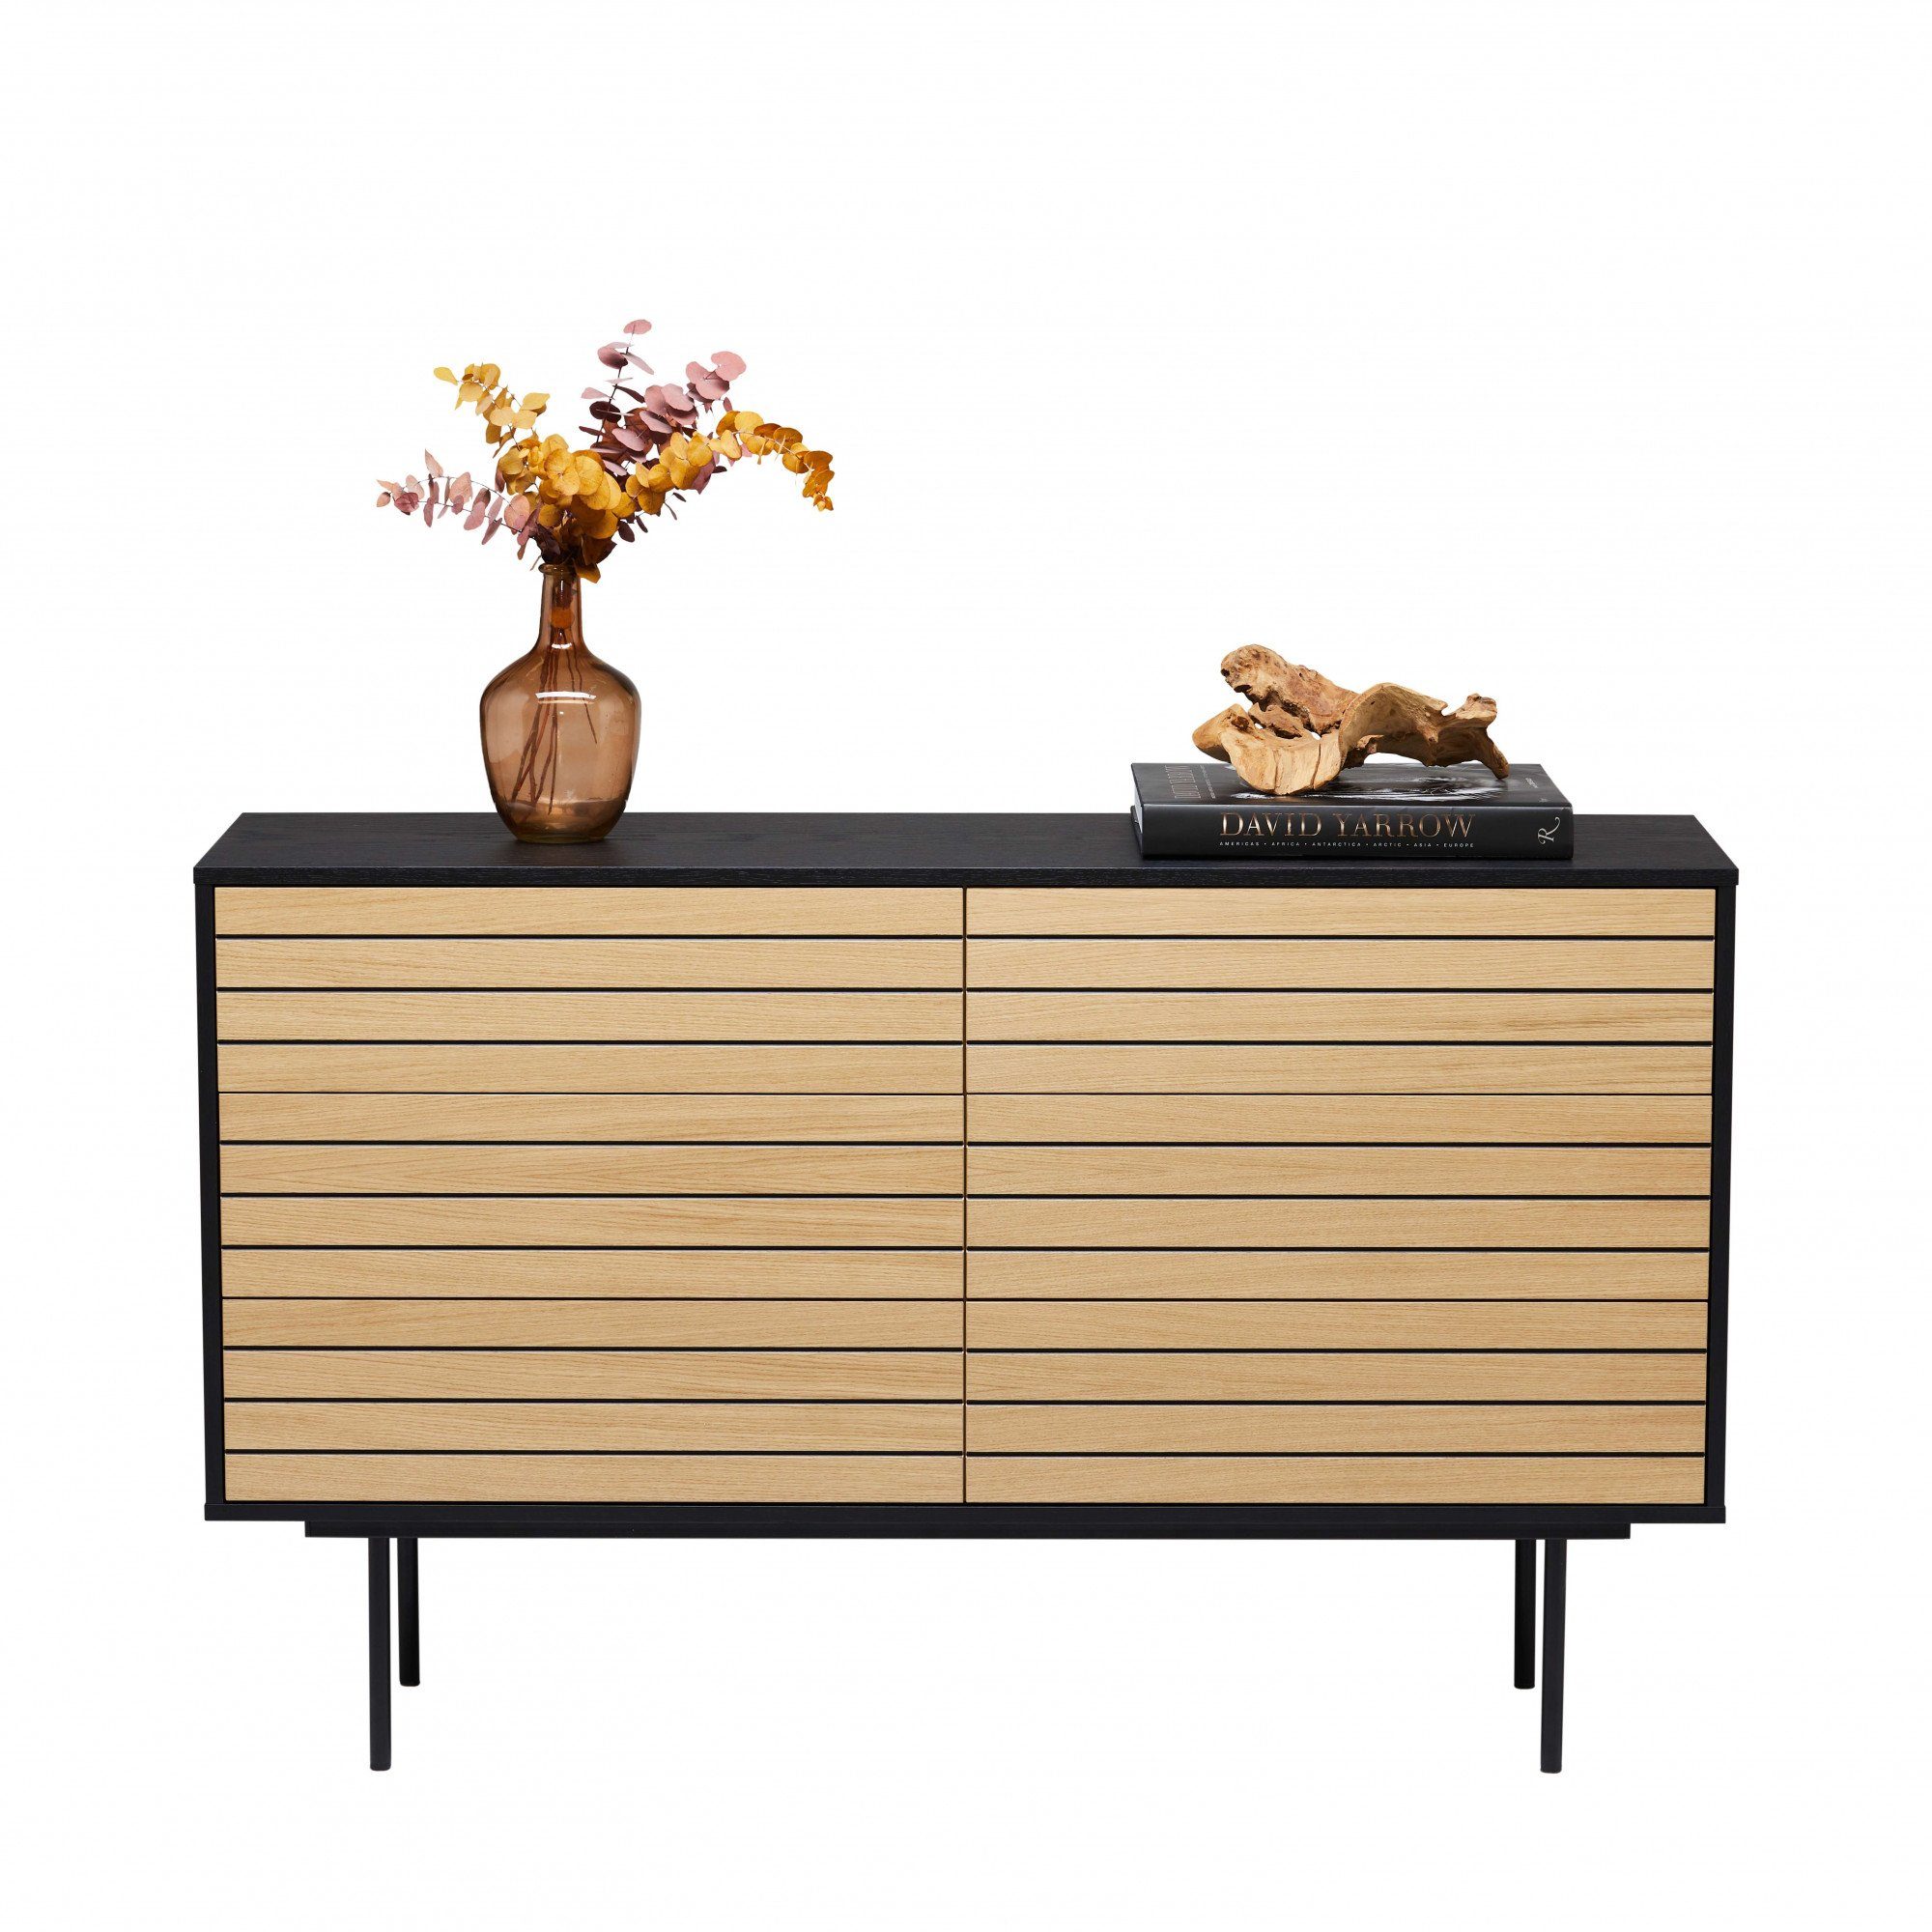 Woodman Schubkastenkommode Stripe, besonderes Design, Schubladen, Breite 140 6 cm